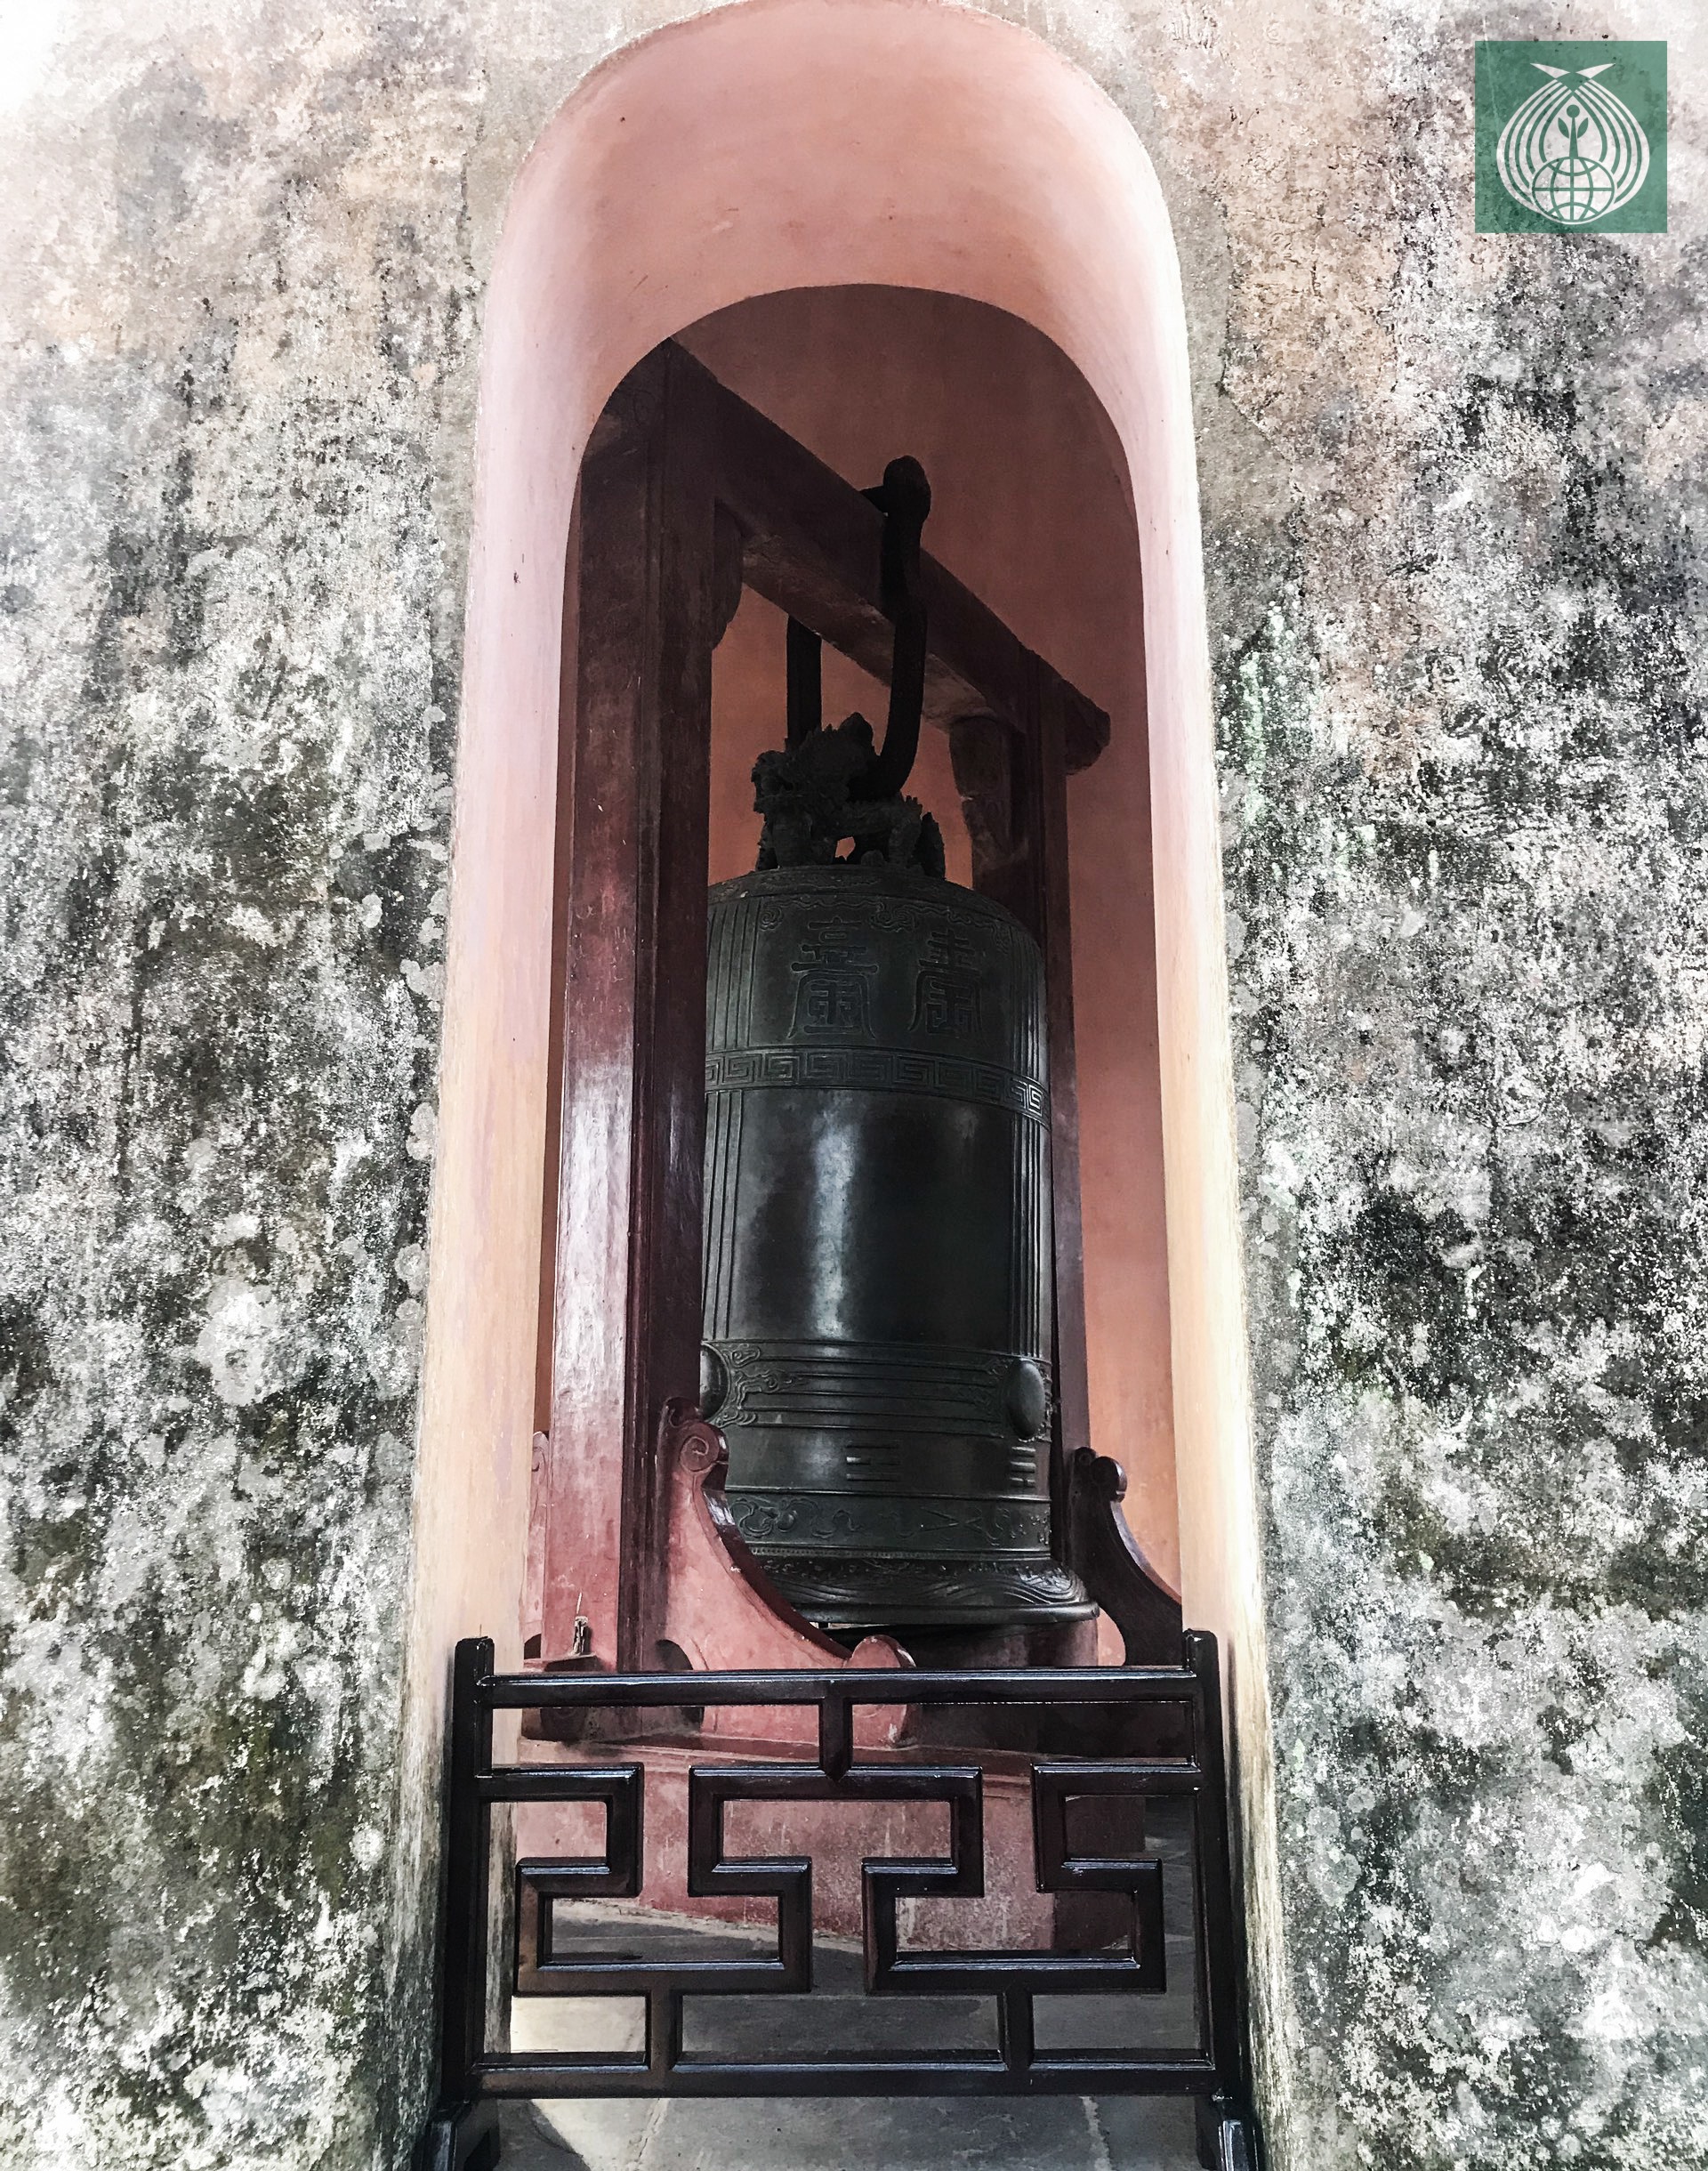 Chuông Đại Hồng trong chùa Thiên Mụ, là một sản vật hàng trăm tuổi.